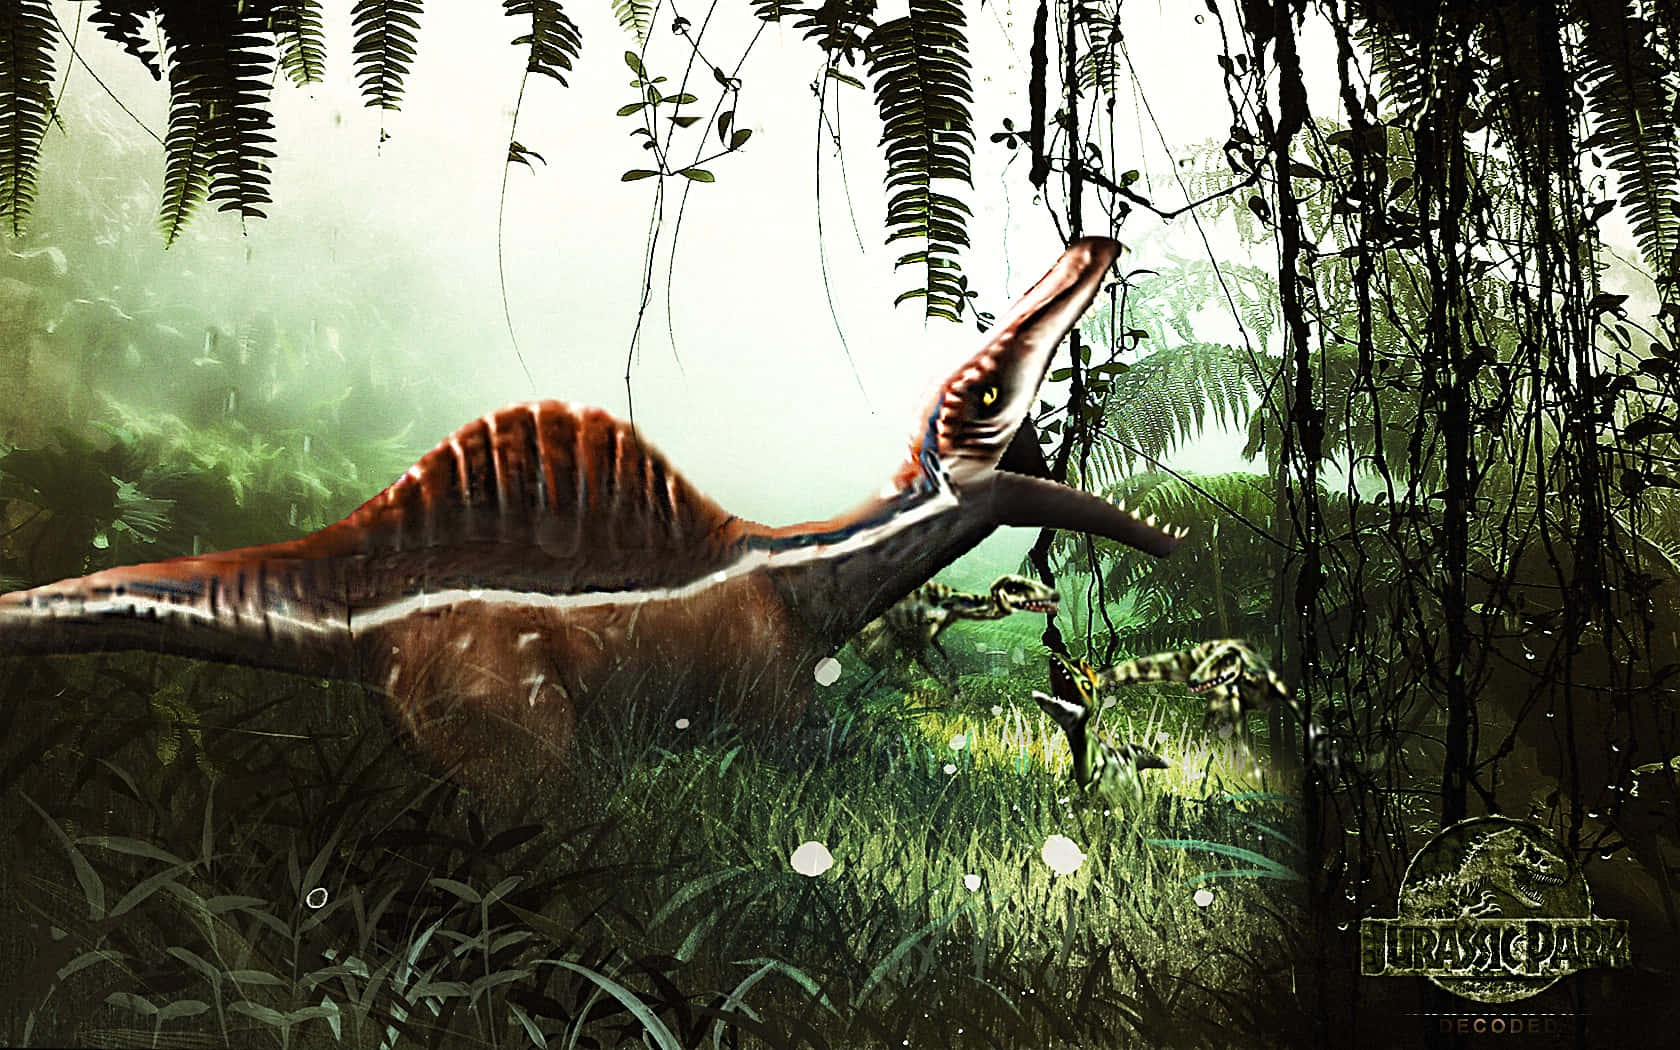 Ennärbild Av En Spinosaurus, En Dinosaurie Från Krita-perioden. Wallpaper